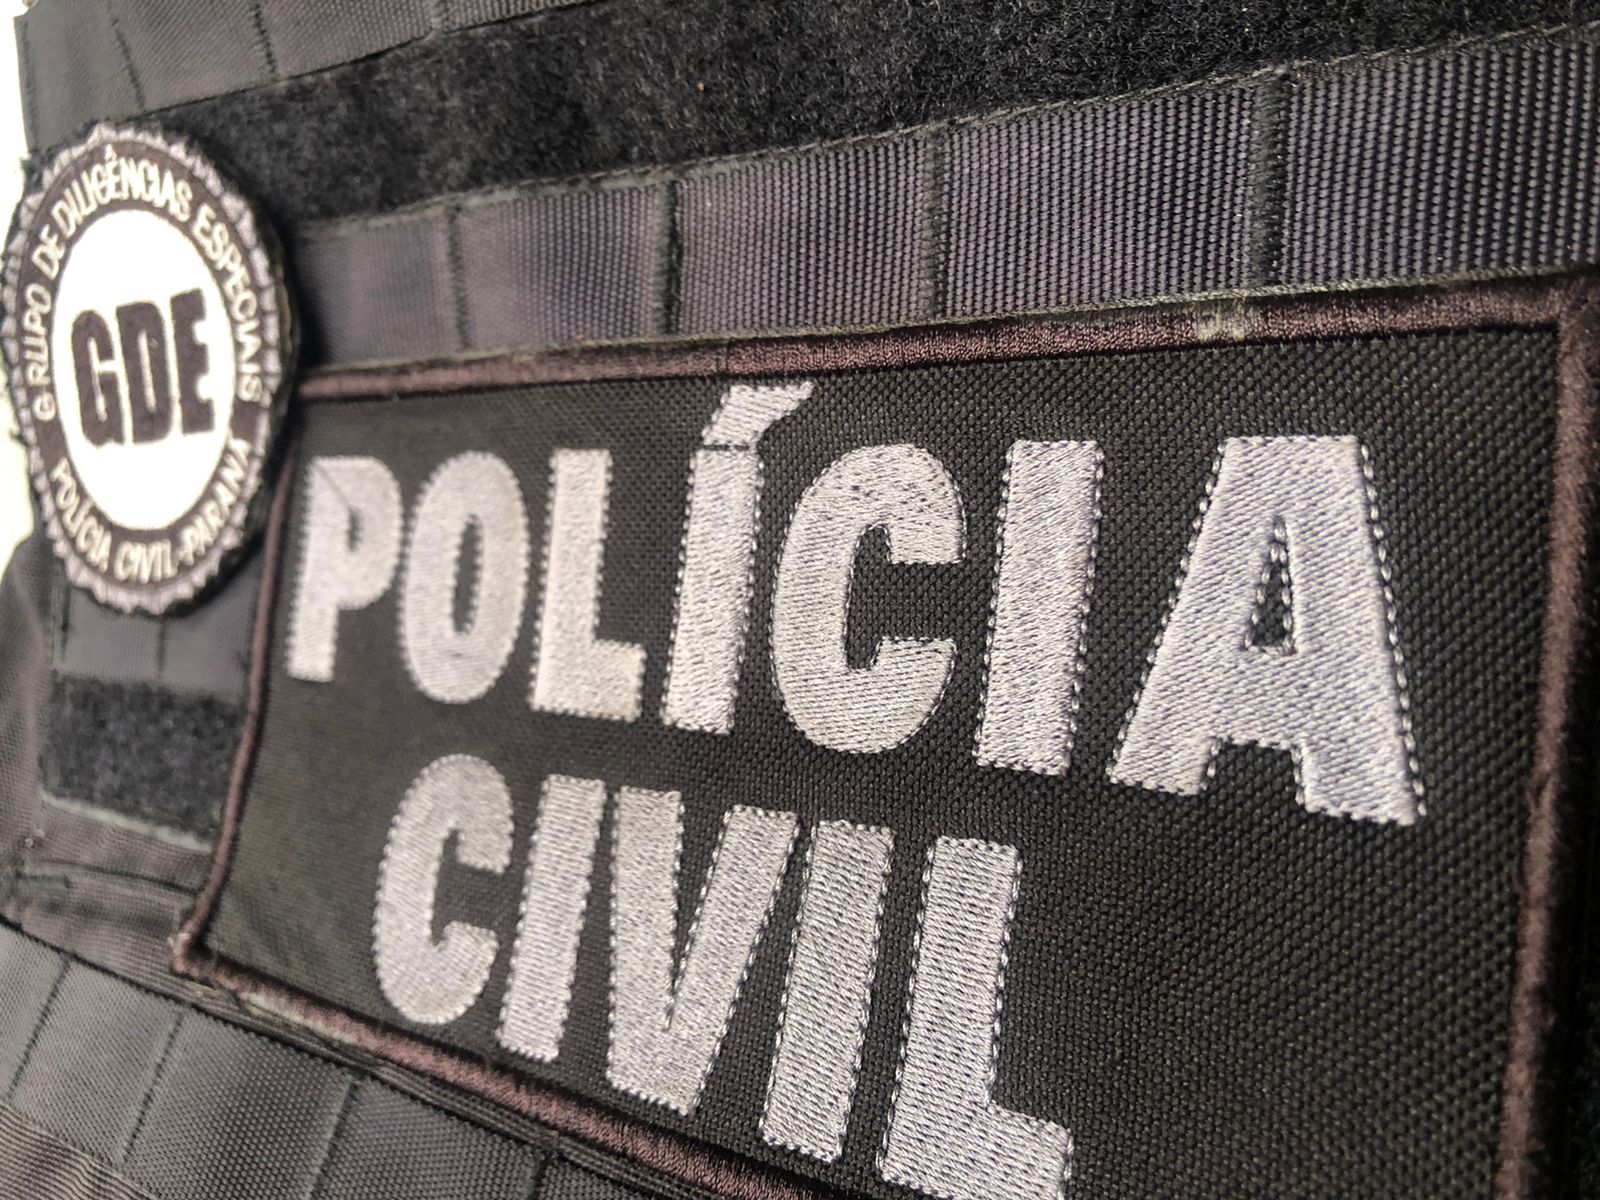 Polícia Civil e Militar realizam operação em Perobal contra tráfico de drogas 